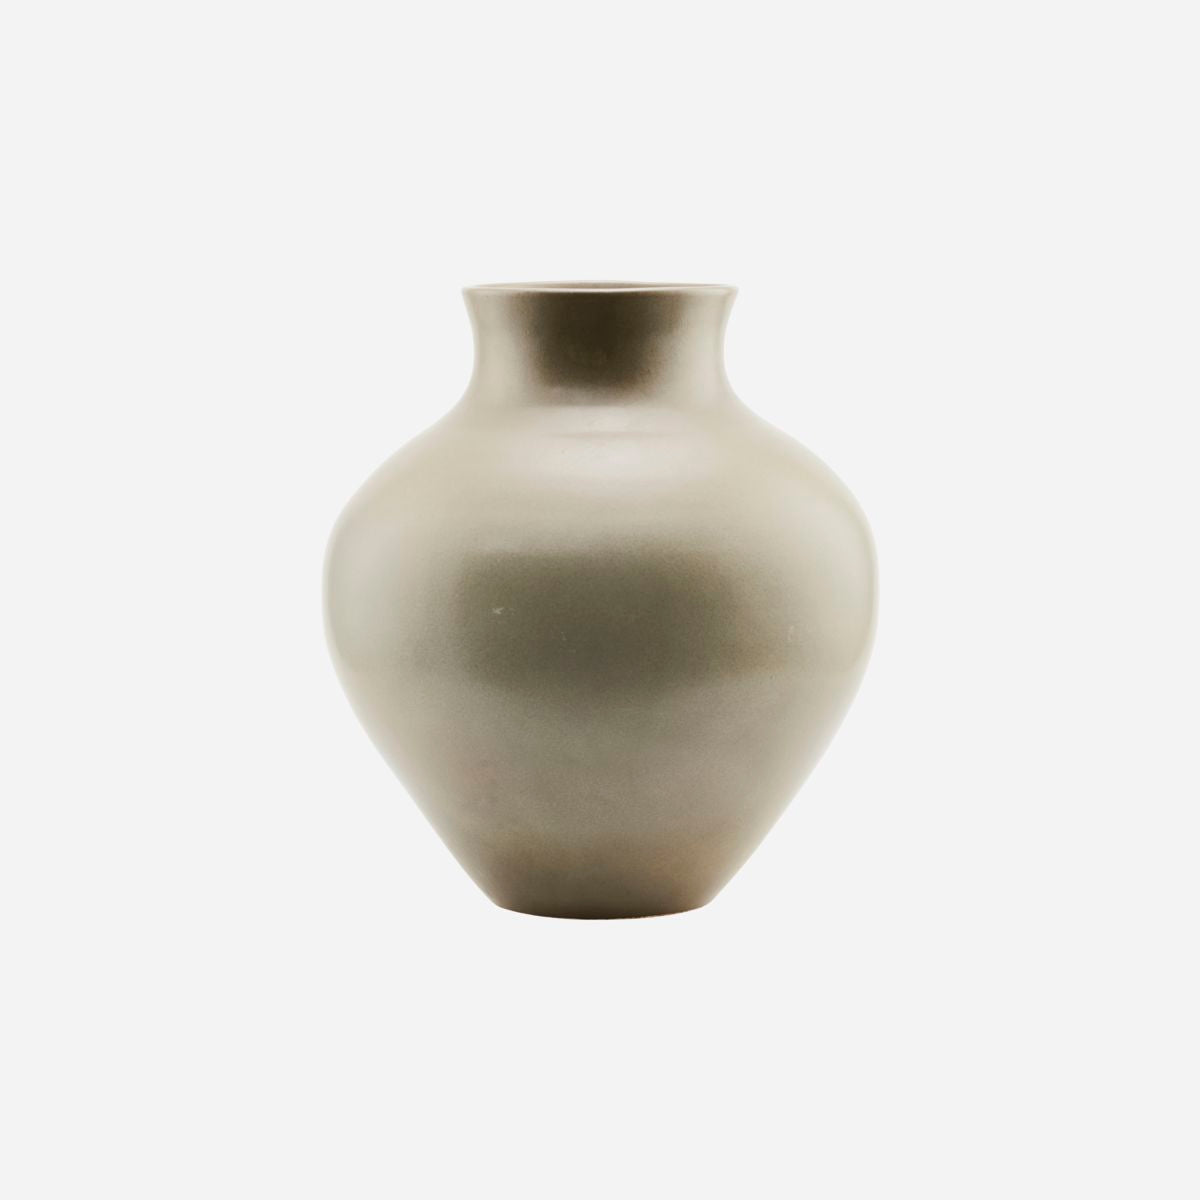 Vase, Santa Fe, Shellish mud